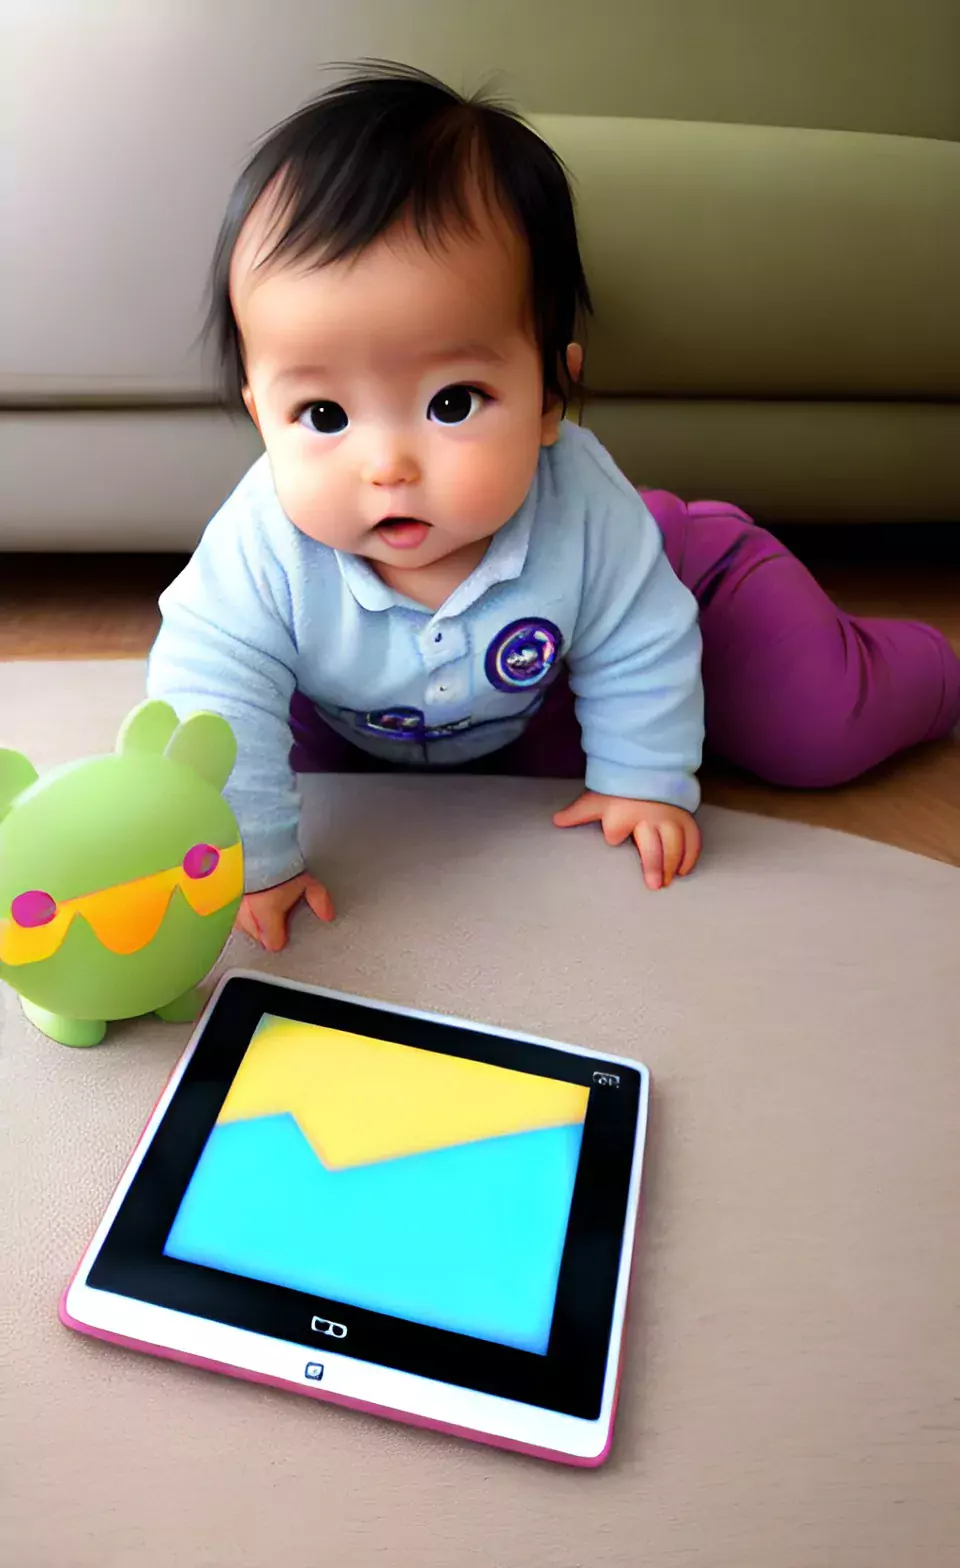 bambina davanti ad un tablet